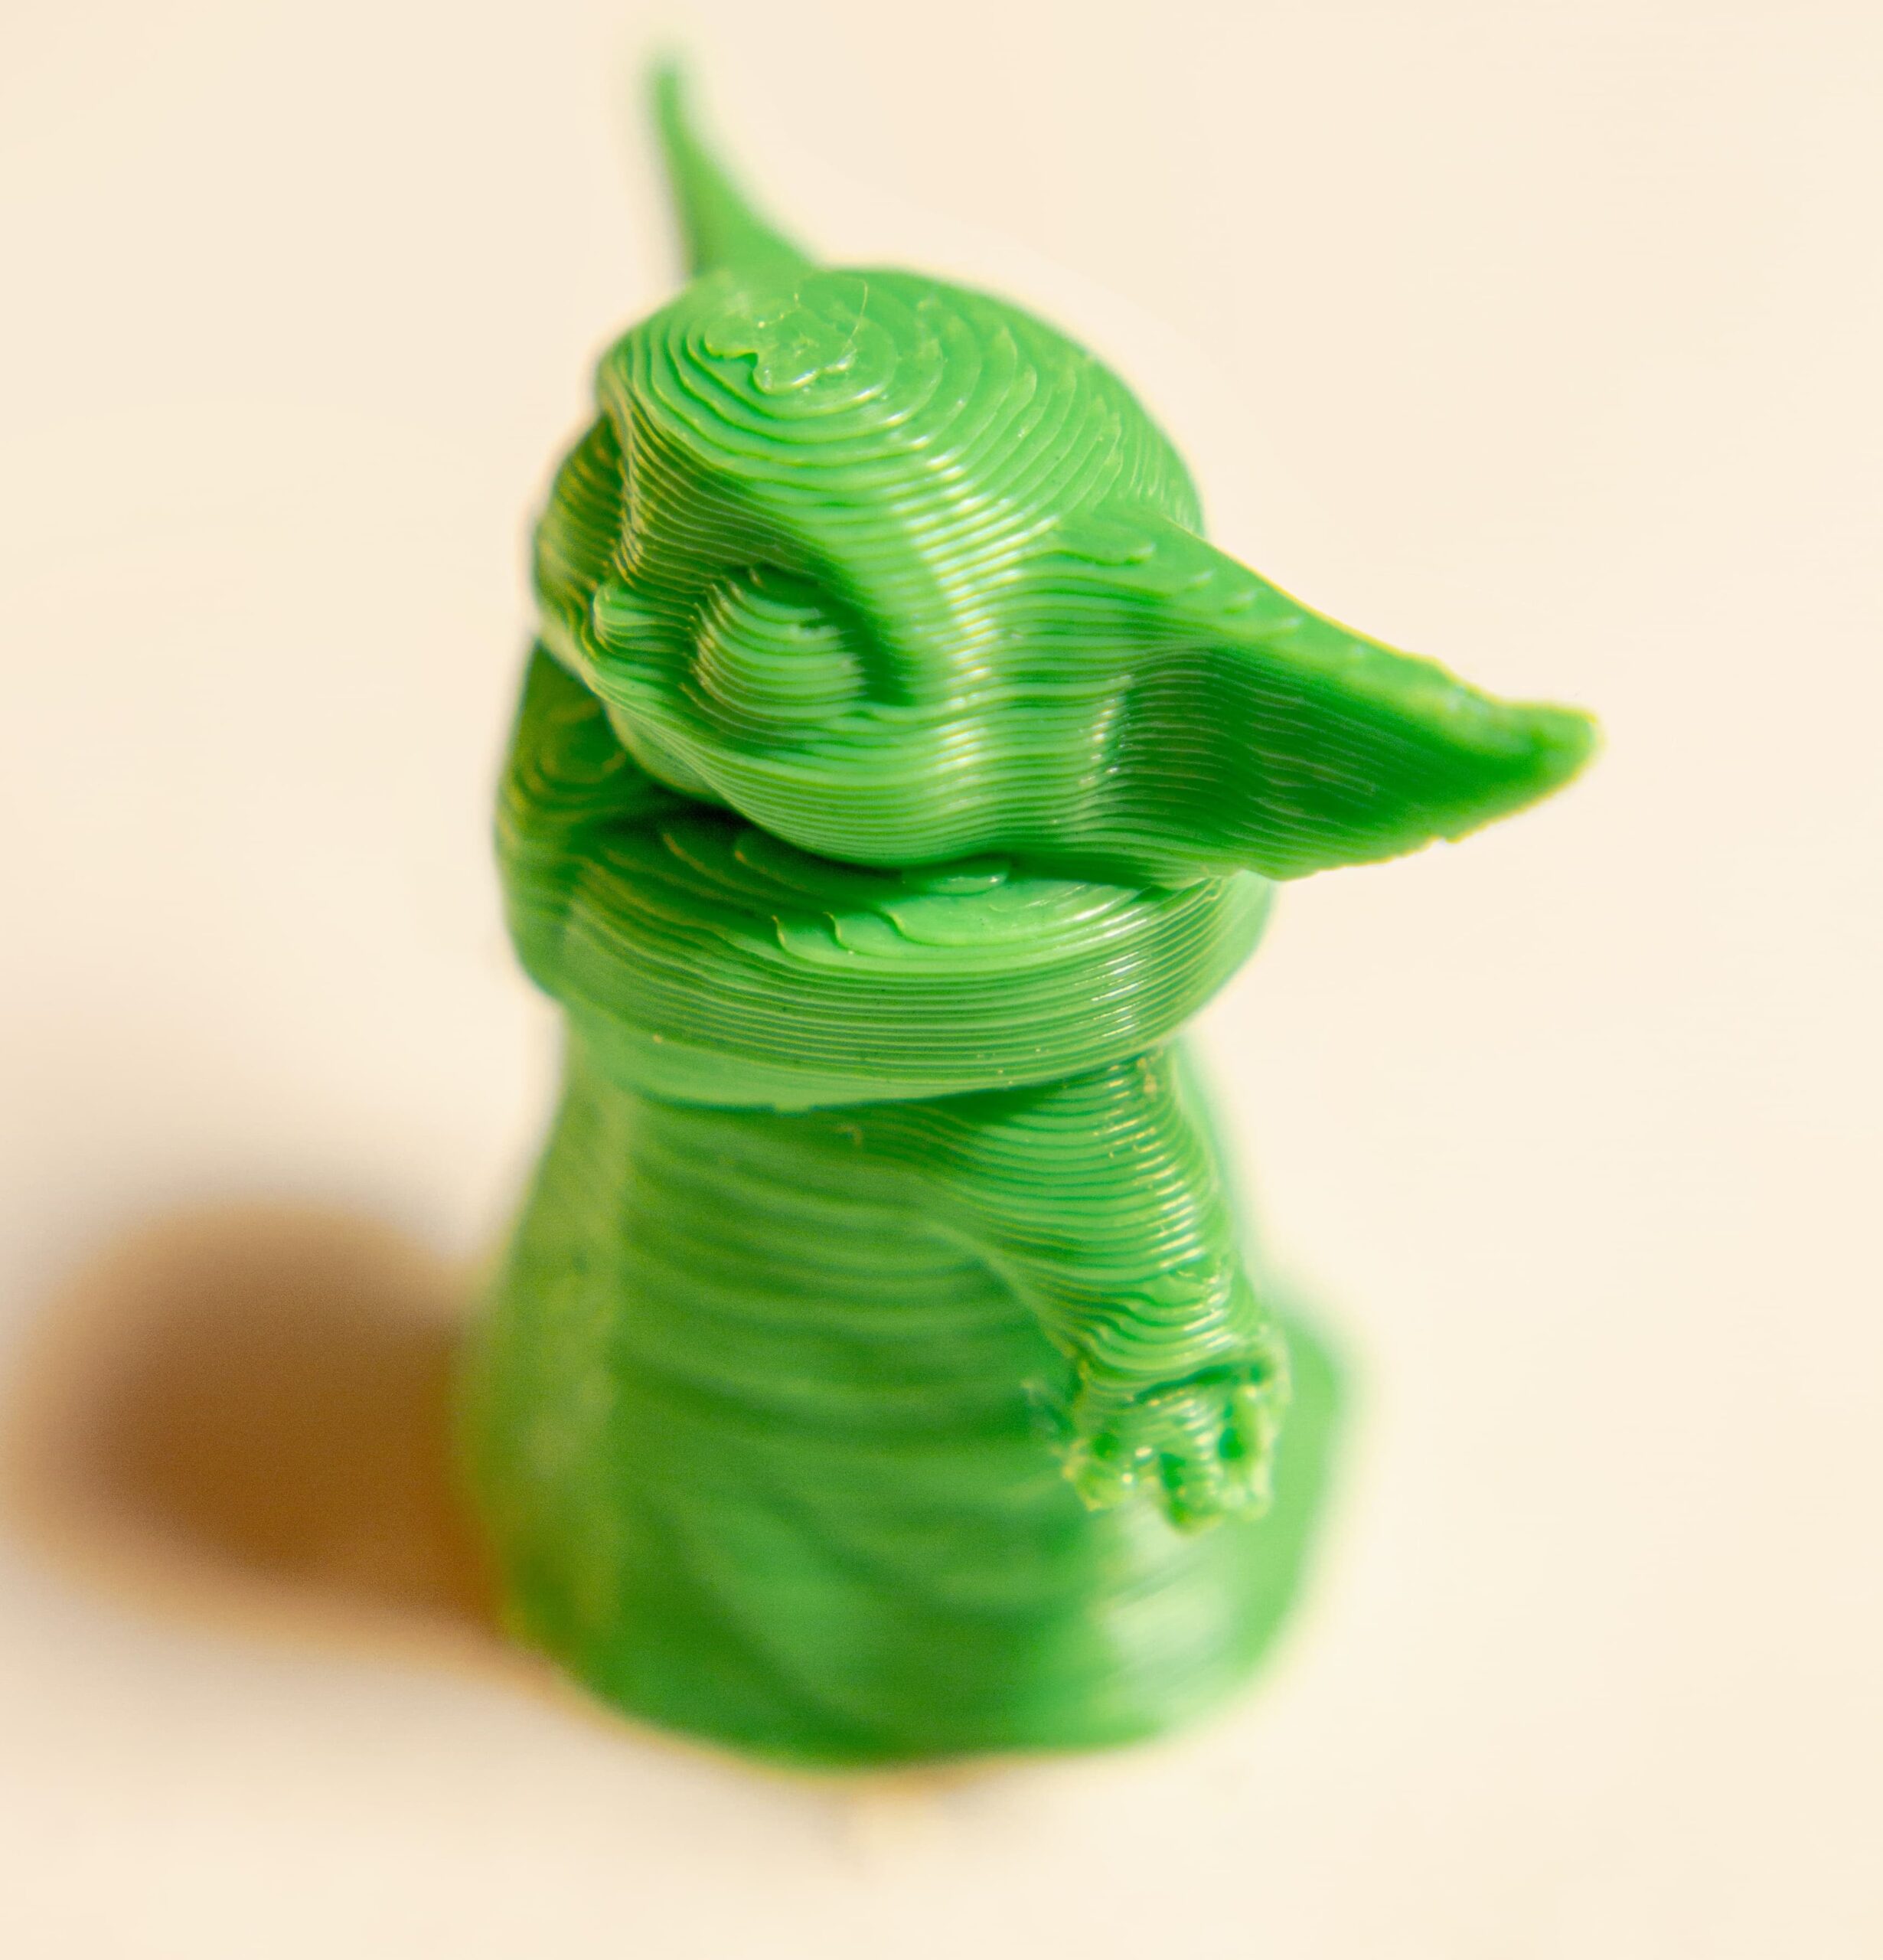 Impresión 3D ¿filamento o resina, cual usar? - TuFigura3D